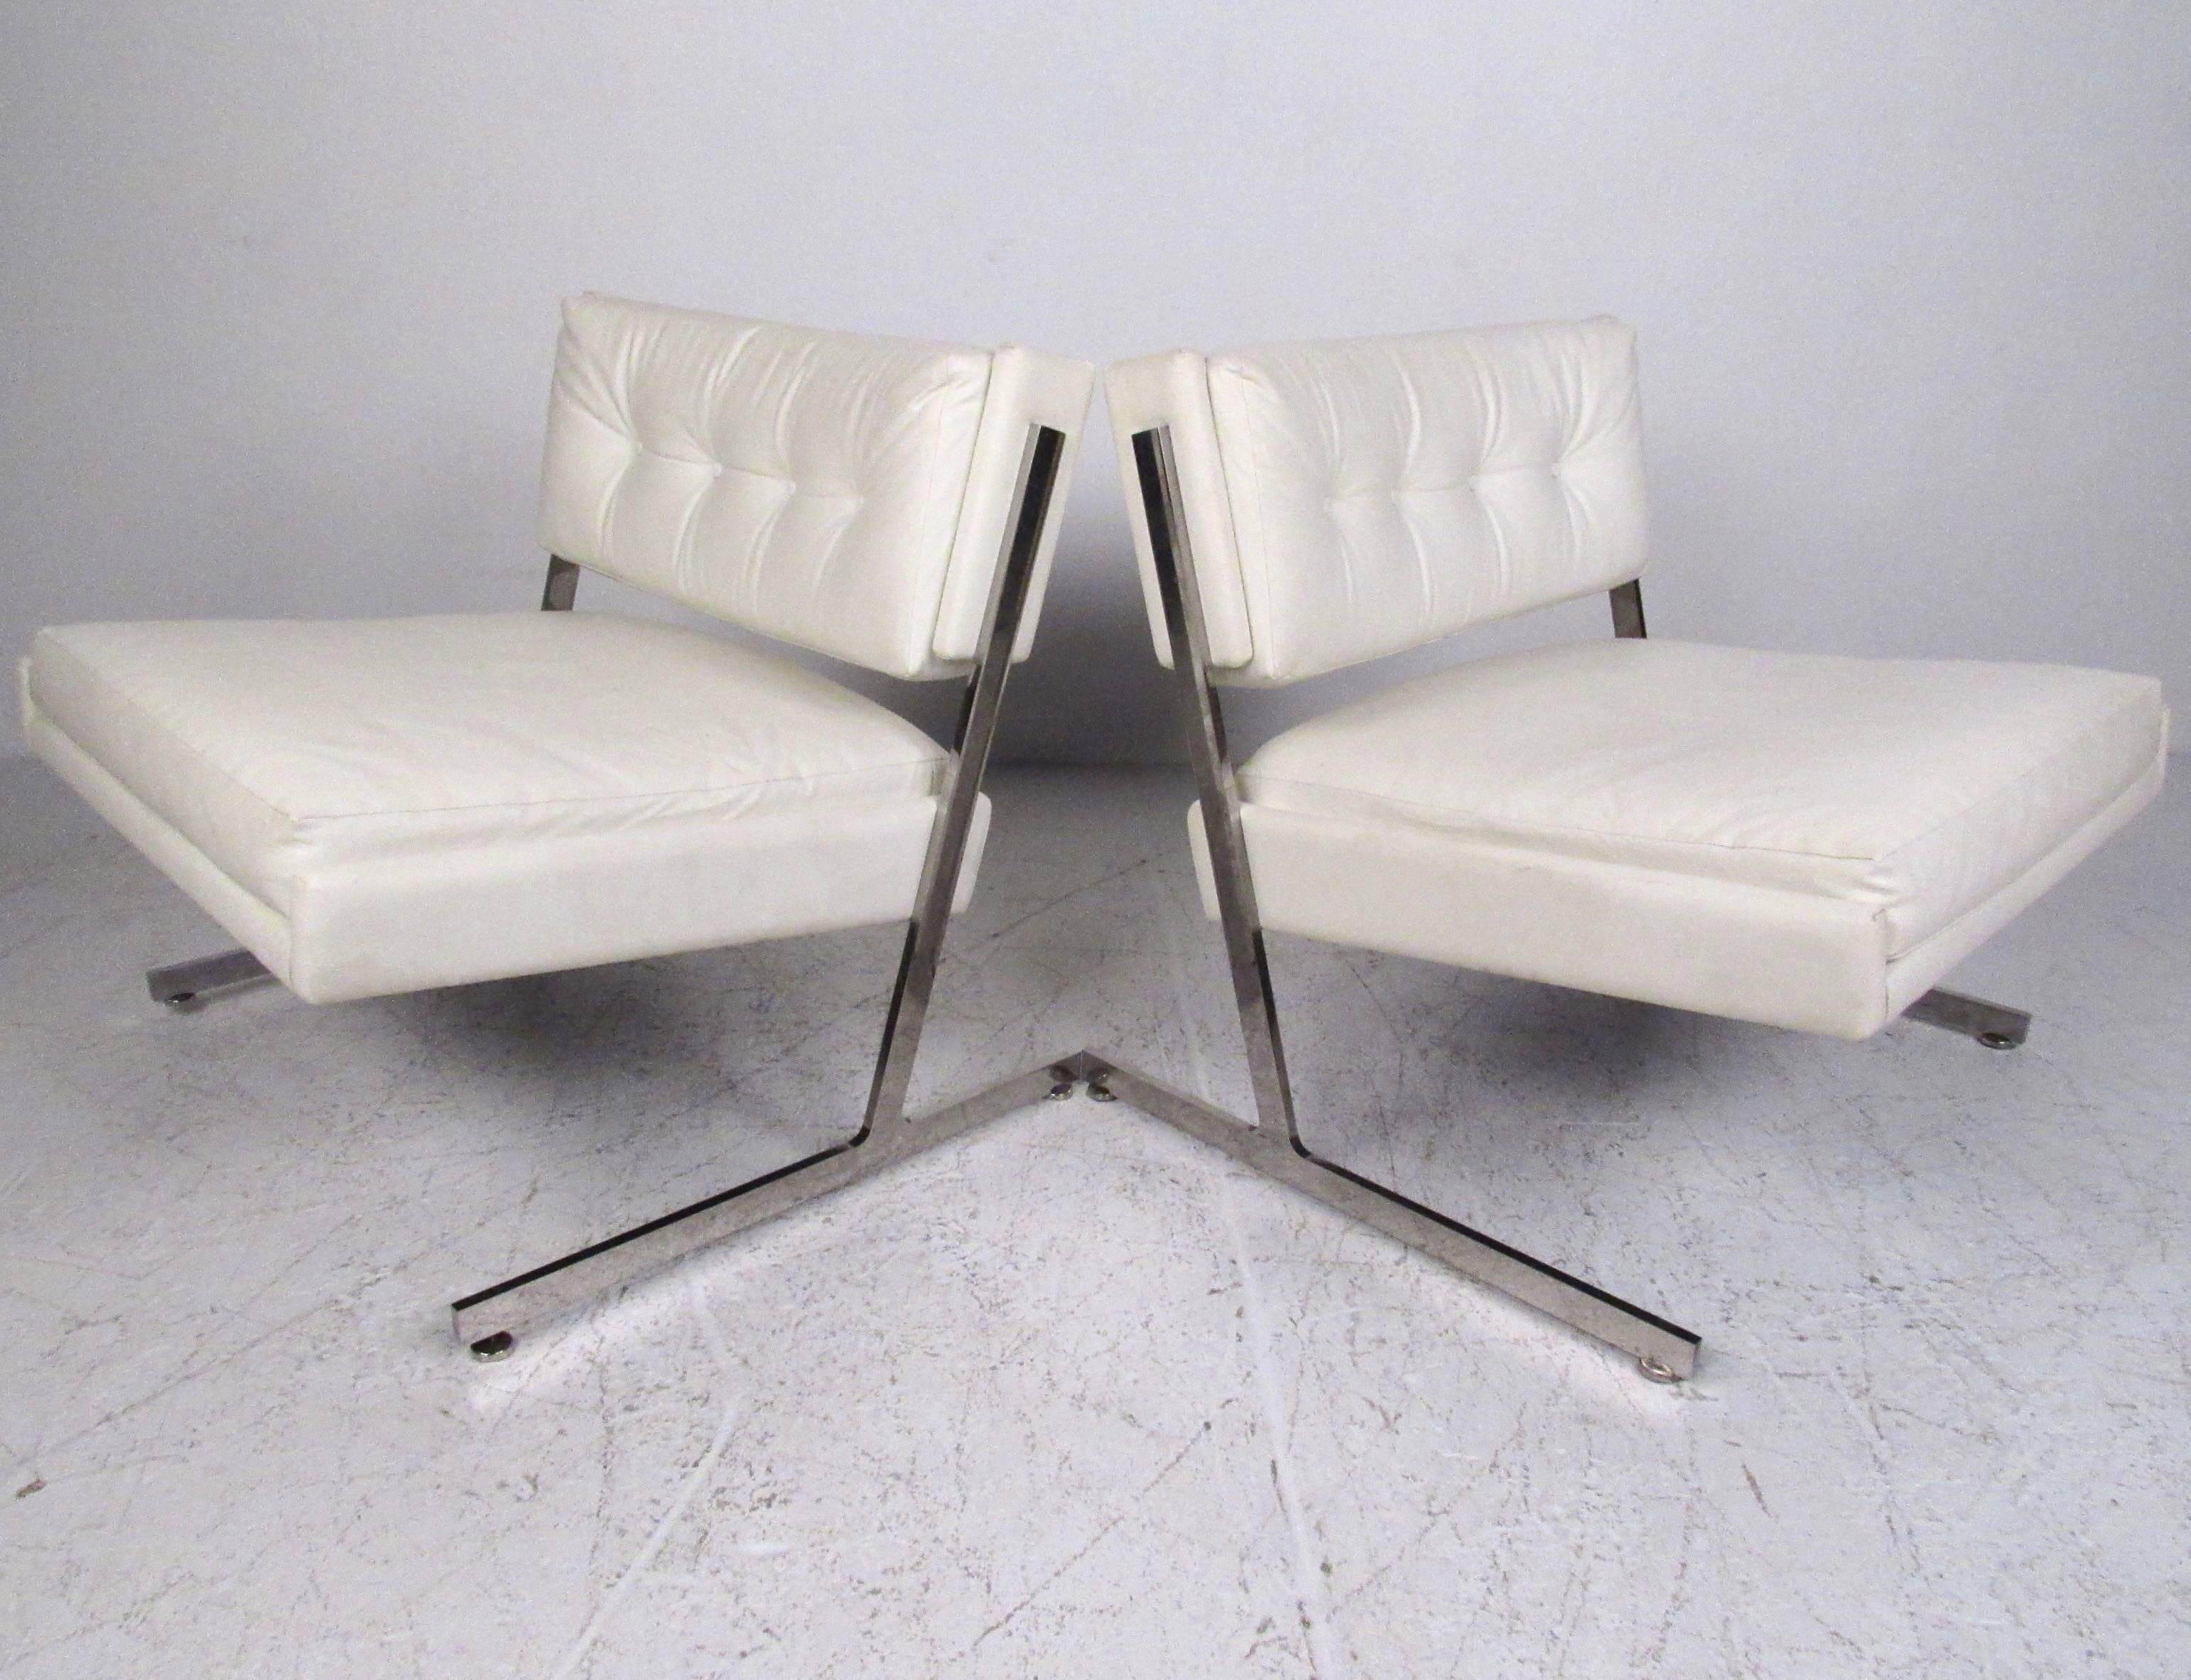 Cette superbe paire de chaises de salon modernes de Harvey Probber présente des dossiers en vinyle tufté et de larges assises en forme de pantoufles. La structure chromée lourde en porte-à-faux constitue un complément impressionnant de style